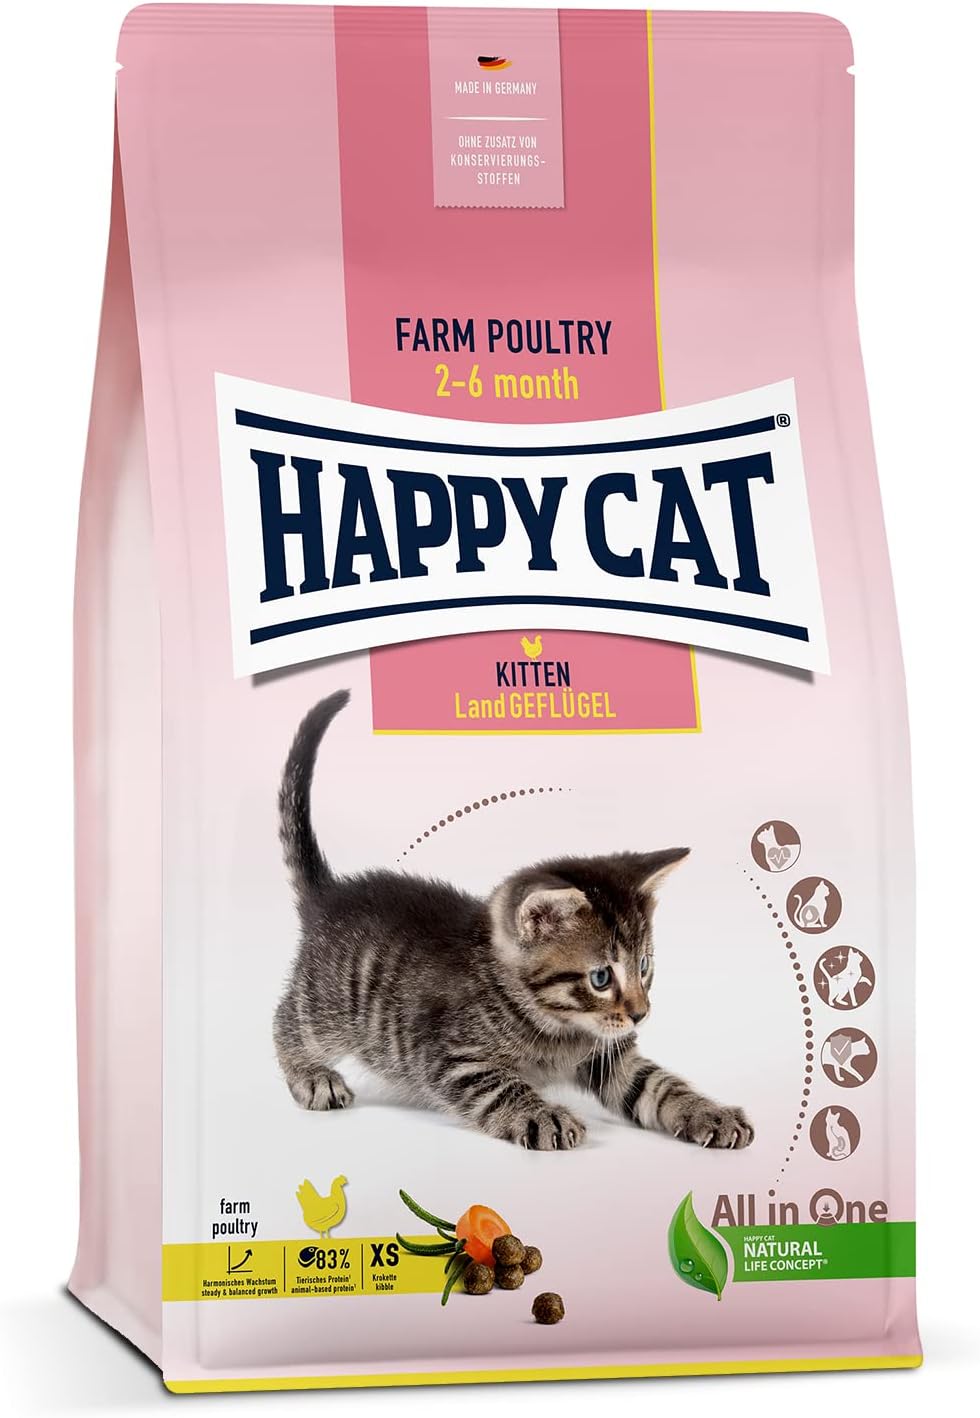 Happy Cat Kitten Land Geflugel (Poultry) - 1.3 KG